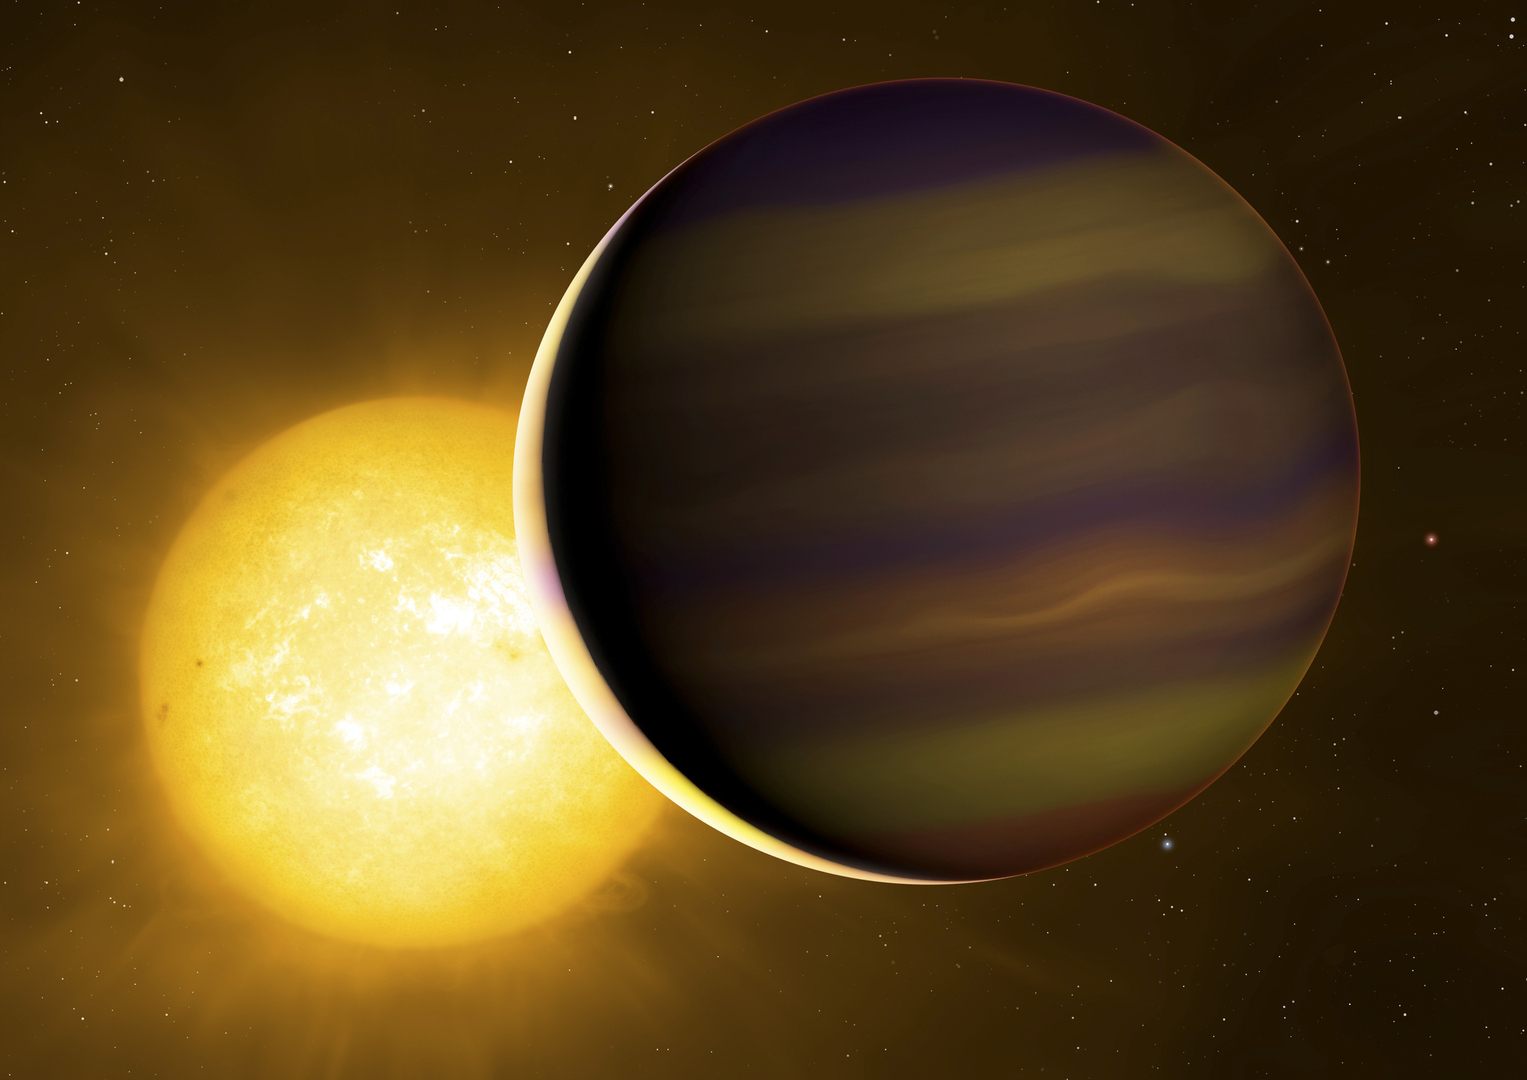 اكتشاف معدن ثقيل غير متوقع  في كواكب شديدة الحرارة خارج المجموعة الشمسية